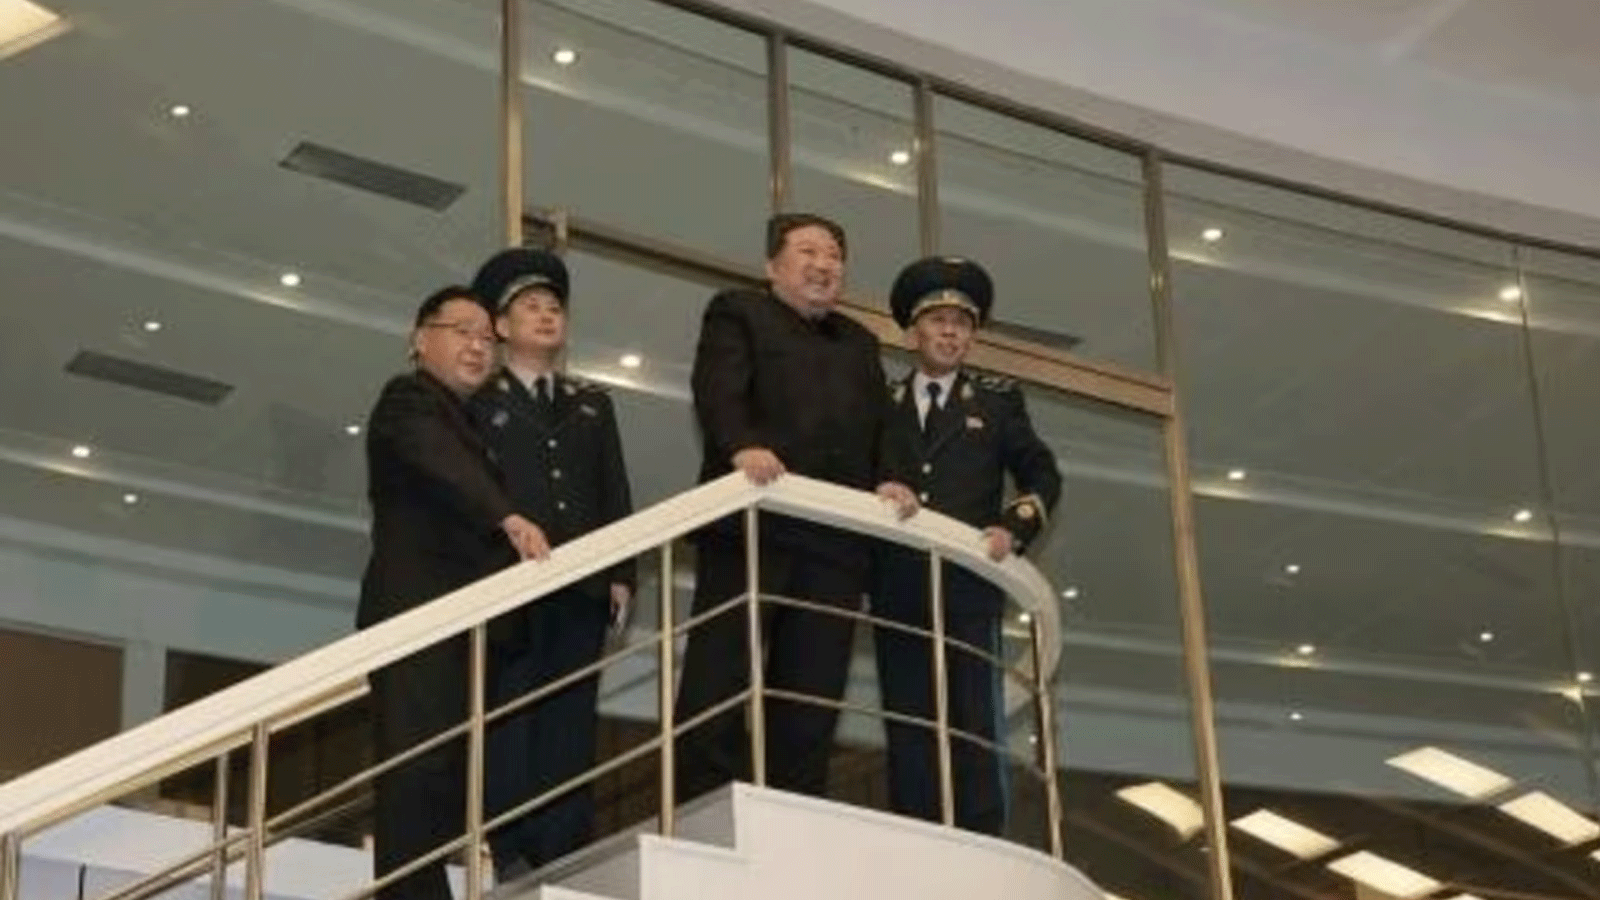 صورة وزعتها وكالة الأنباء الكورية الشمالية الرسمية تظهر كيم جونغ أون خلال زيارة لمركز التحكم العام في بيونغ يانغ التابع لمديرية تكنولوجيا الطيران الوطنية الكورية في 22 تشرين الثاني/نوفمبر 2023